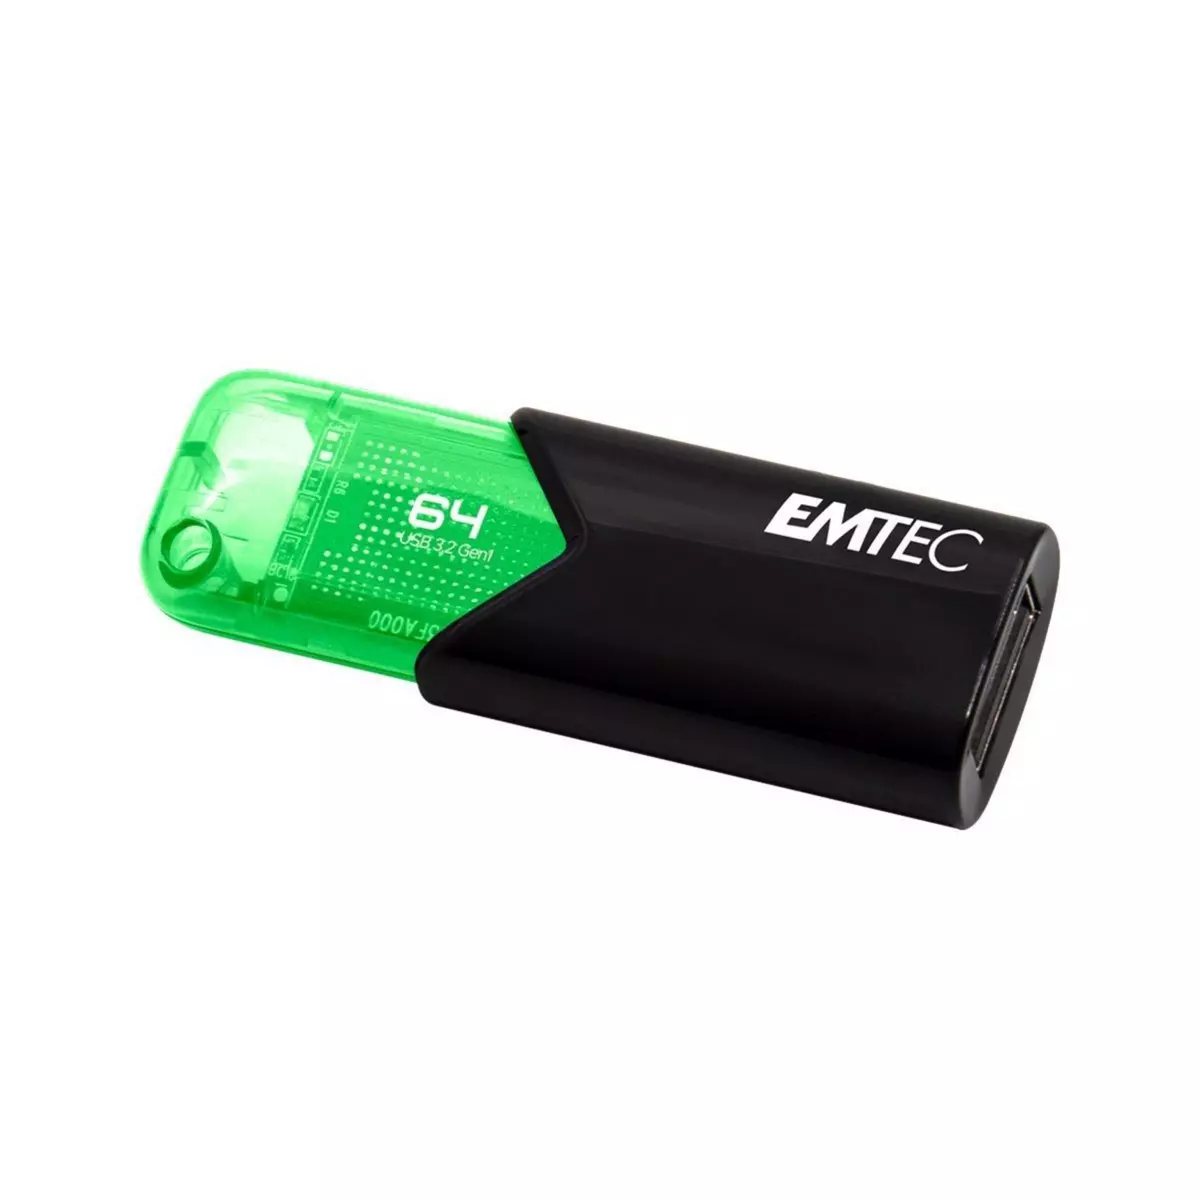 EMTEC Clé USB 64GB 3.2 - Verte pas cher 